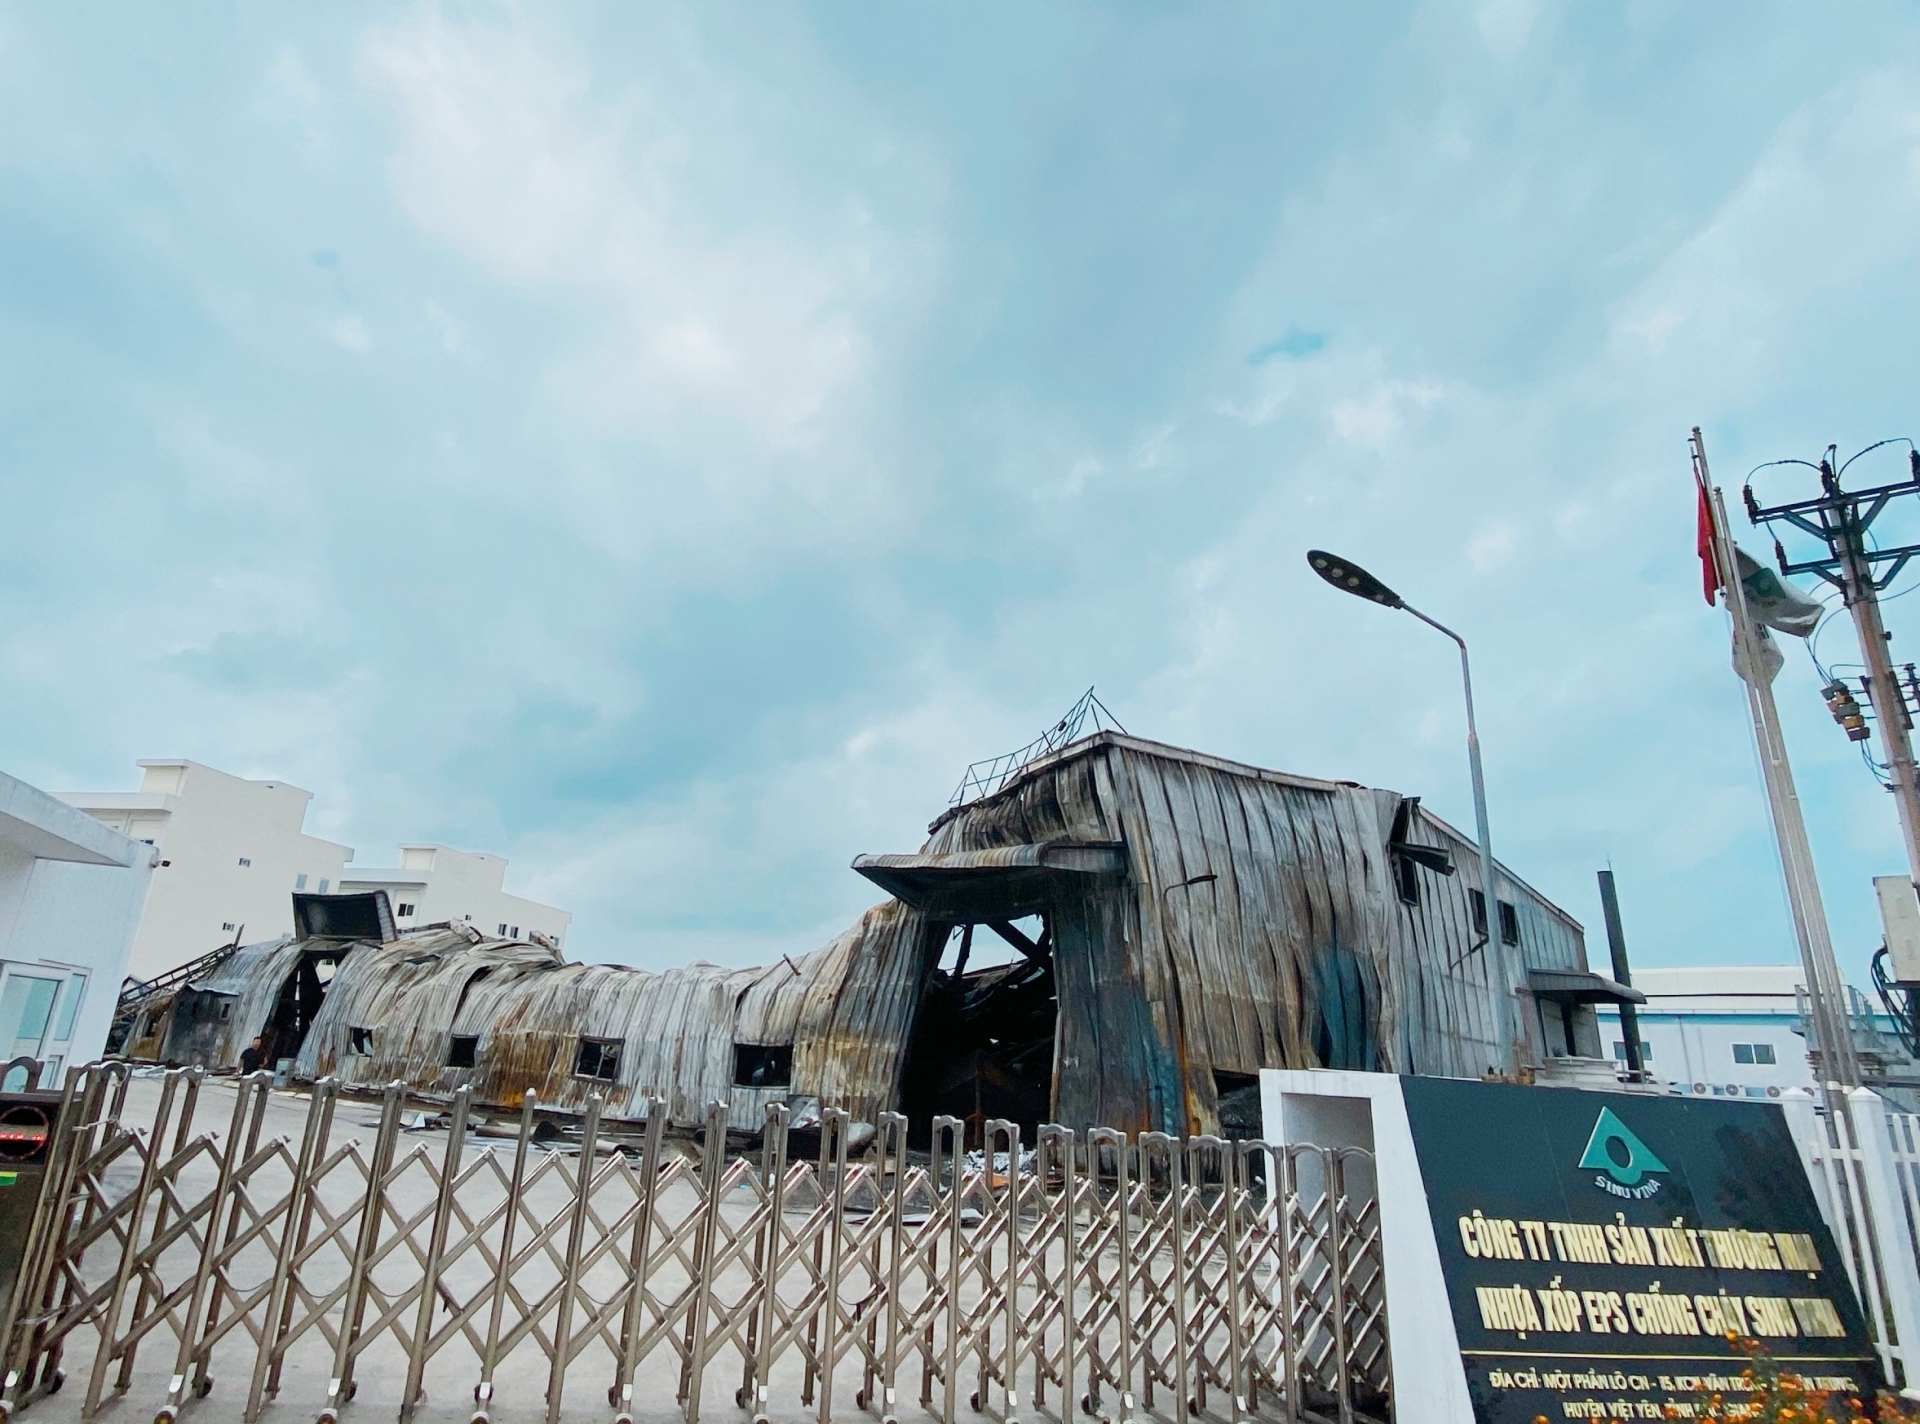 Hé lộ nguyên nhân ban đầu vụ cháy nhà xưởng ở Khu công nghiệp Vân Trung, Bắc Giang